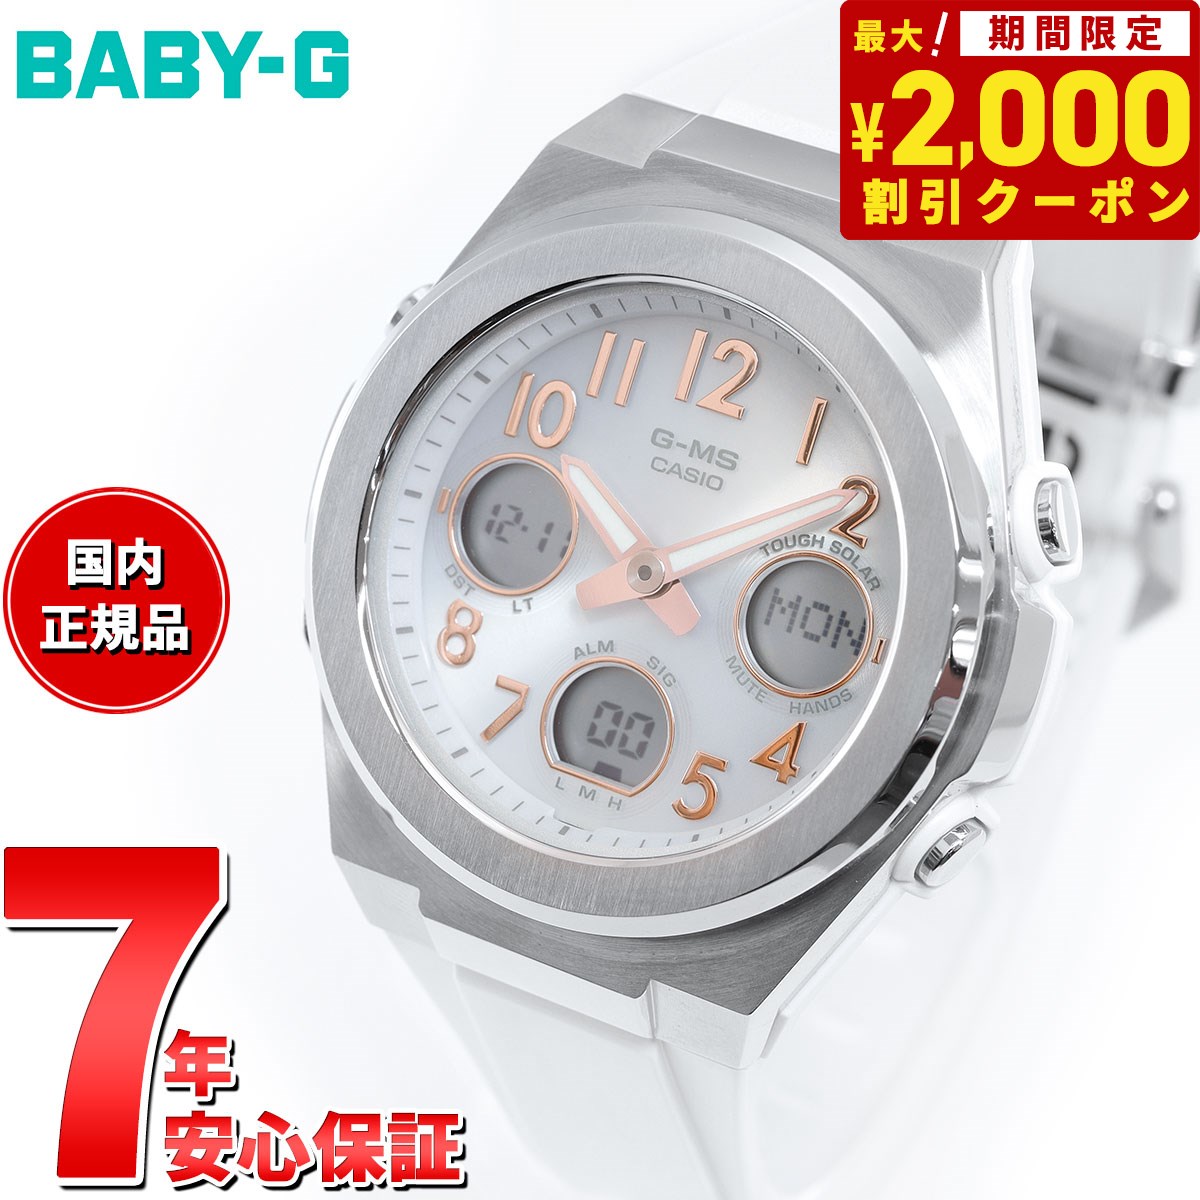 カシオ Baby-G 腕時計（メンズ） 【2000円OFFクーポン！＆店内ポイント最大60倍！スーパーSALE！】BABY-G カシオ ベビーG レディース G-MS 電波 ソーラー 腕時計 タフソーラー MSG-W610-7AJF シルバー ホワイト